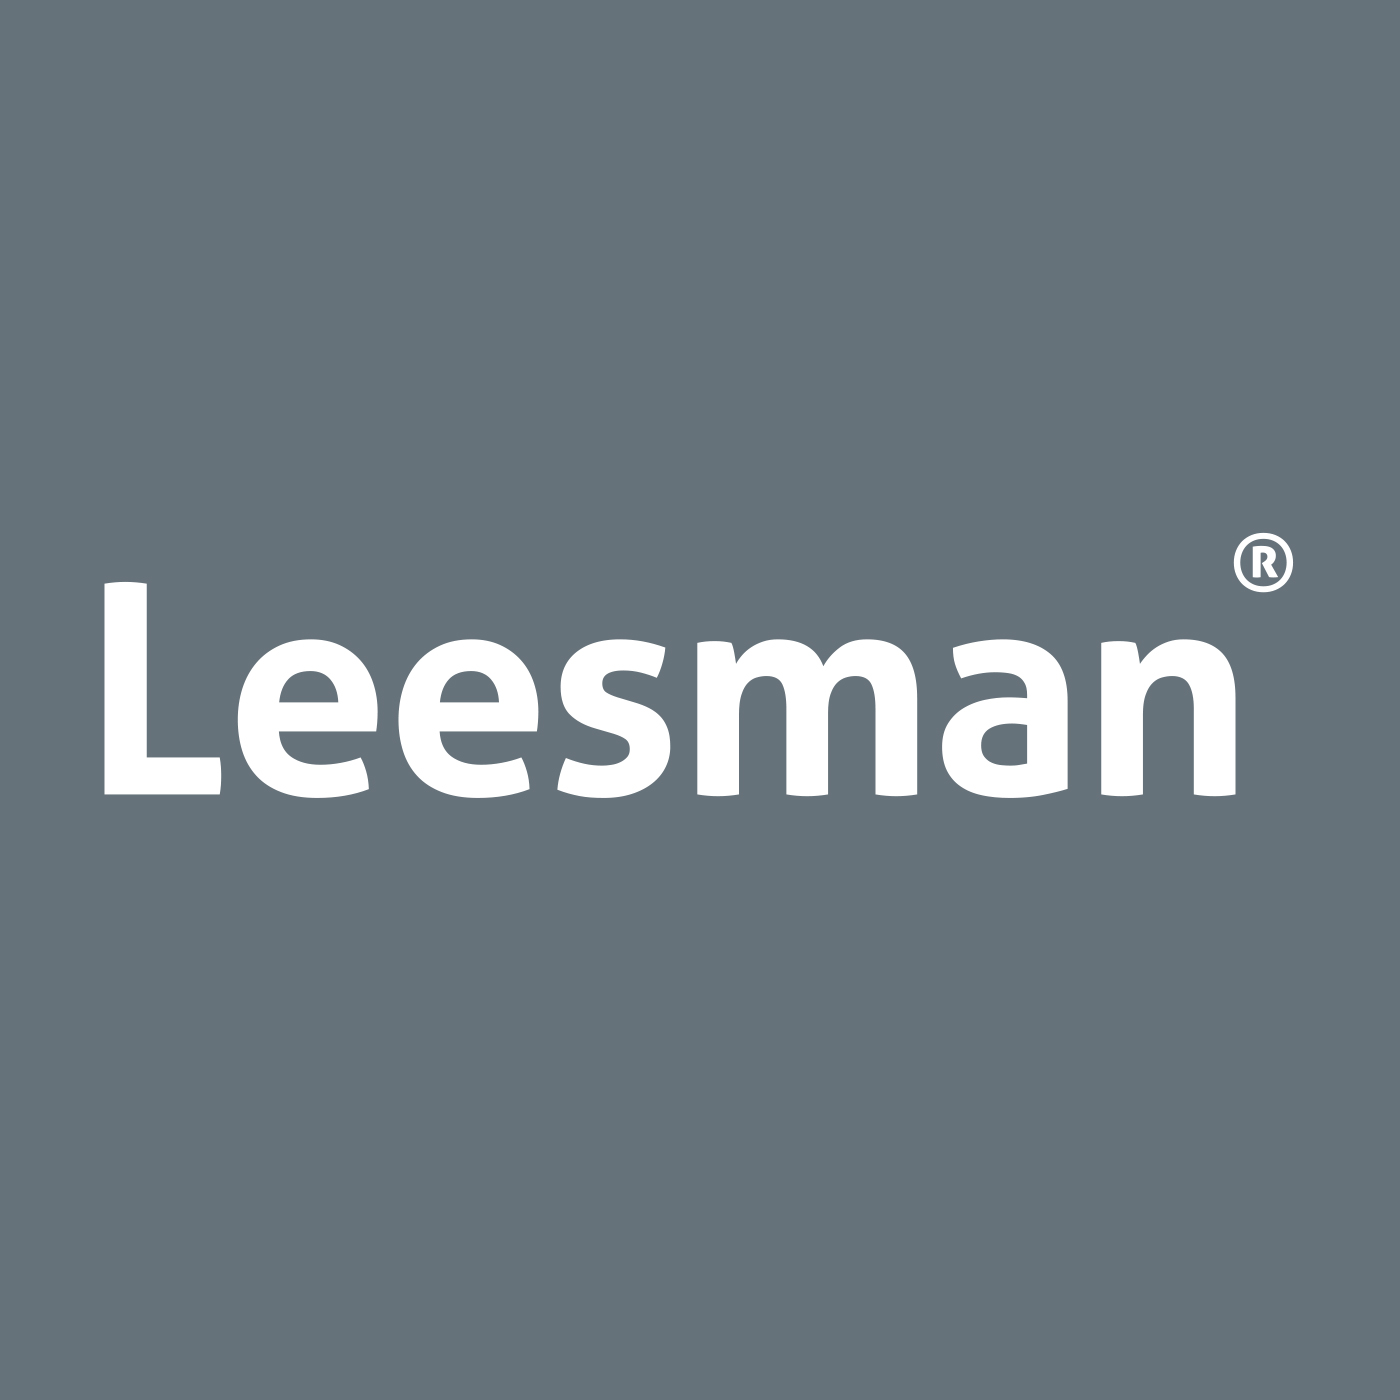 Leesman Insights